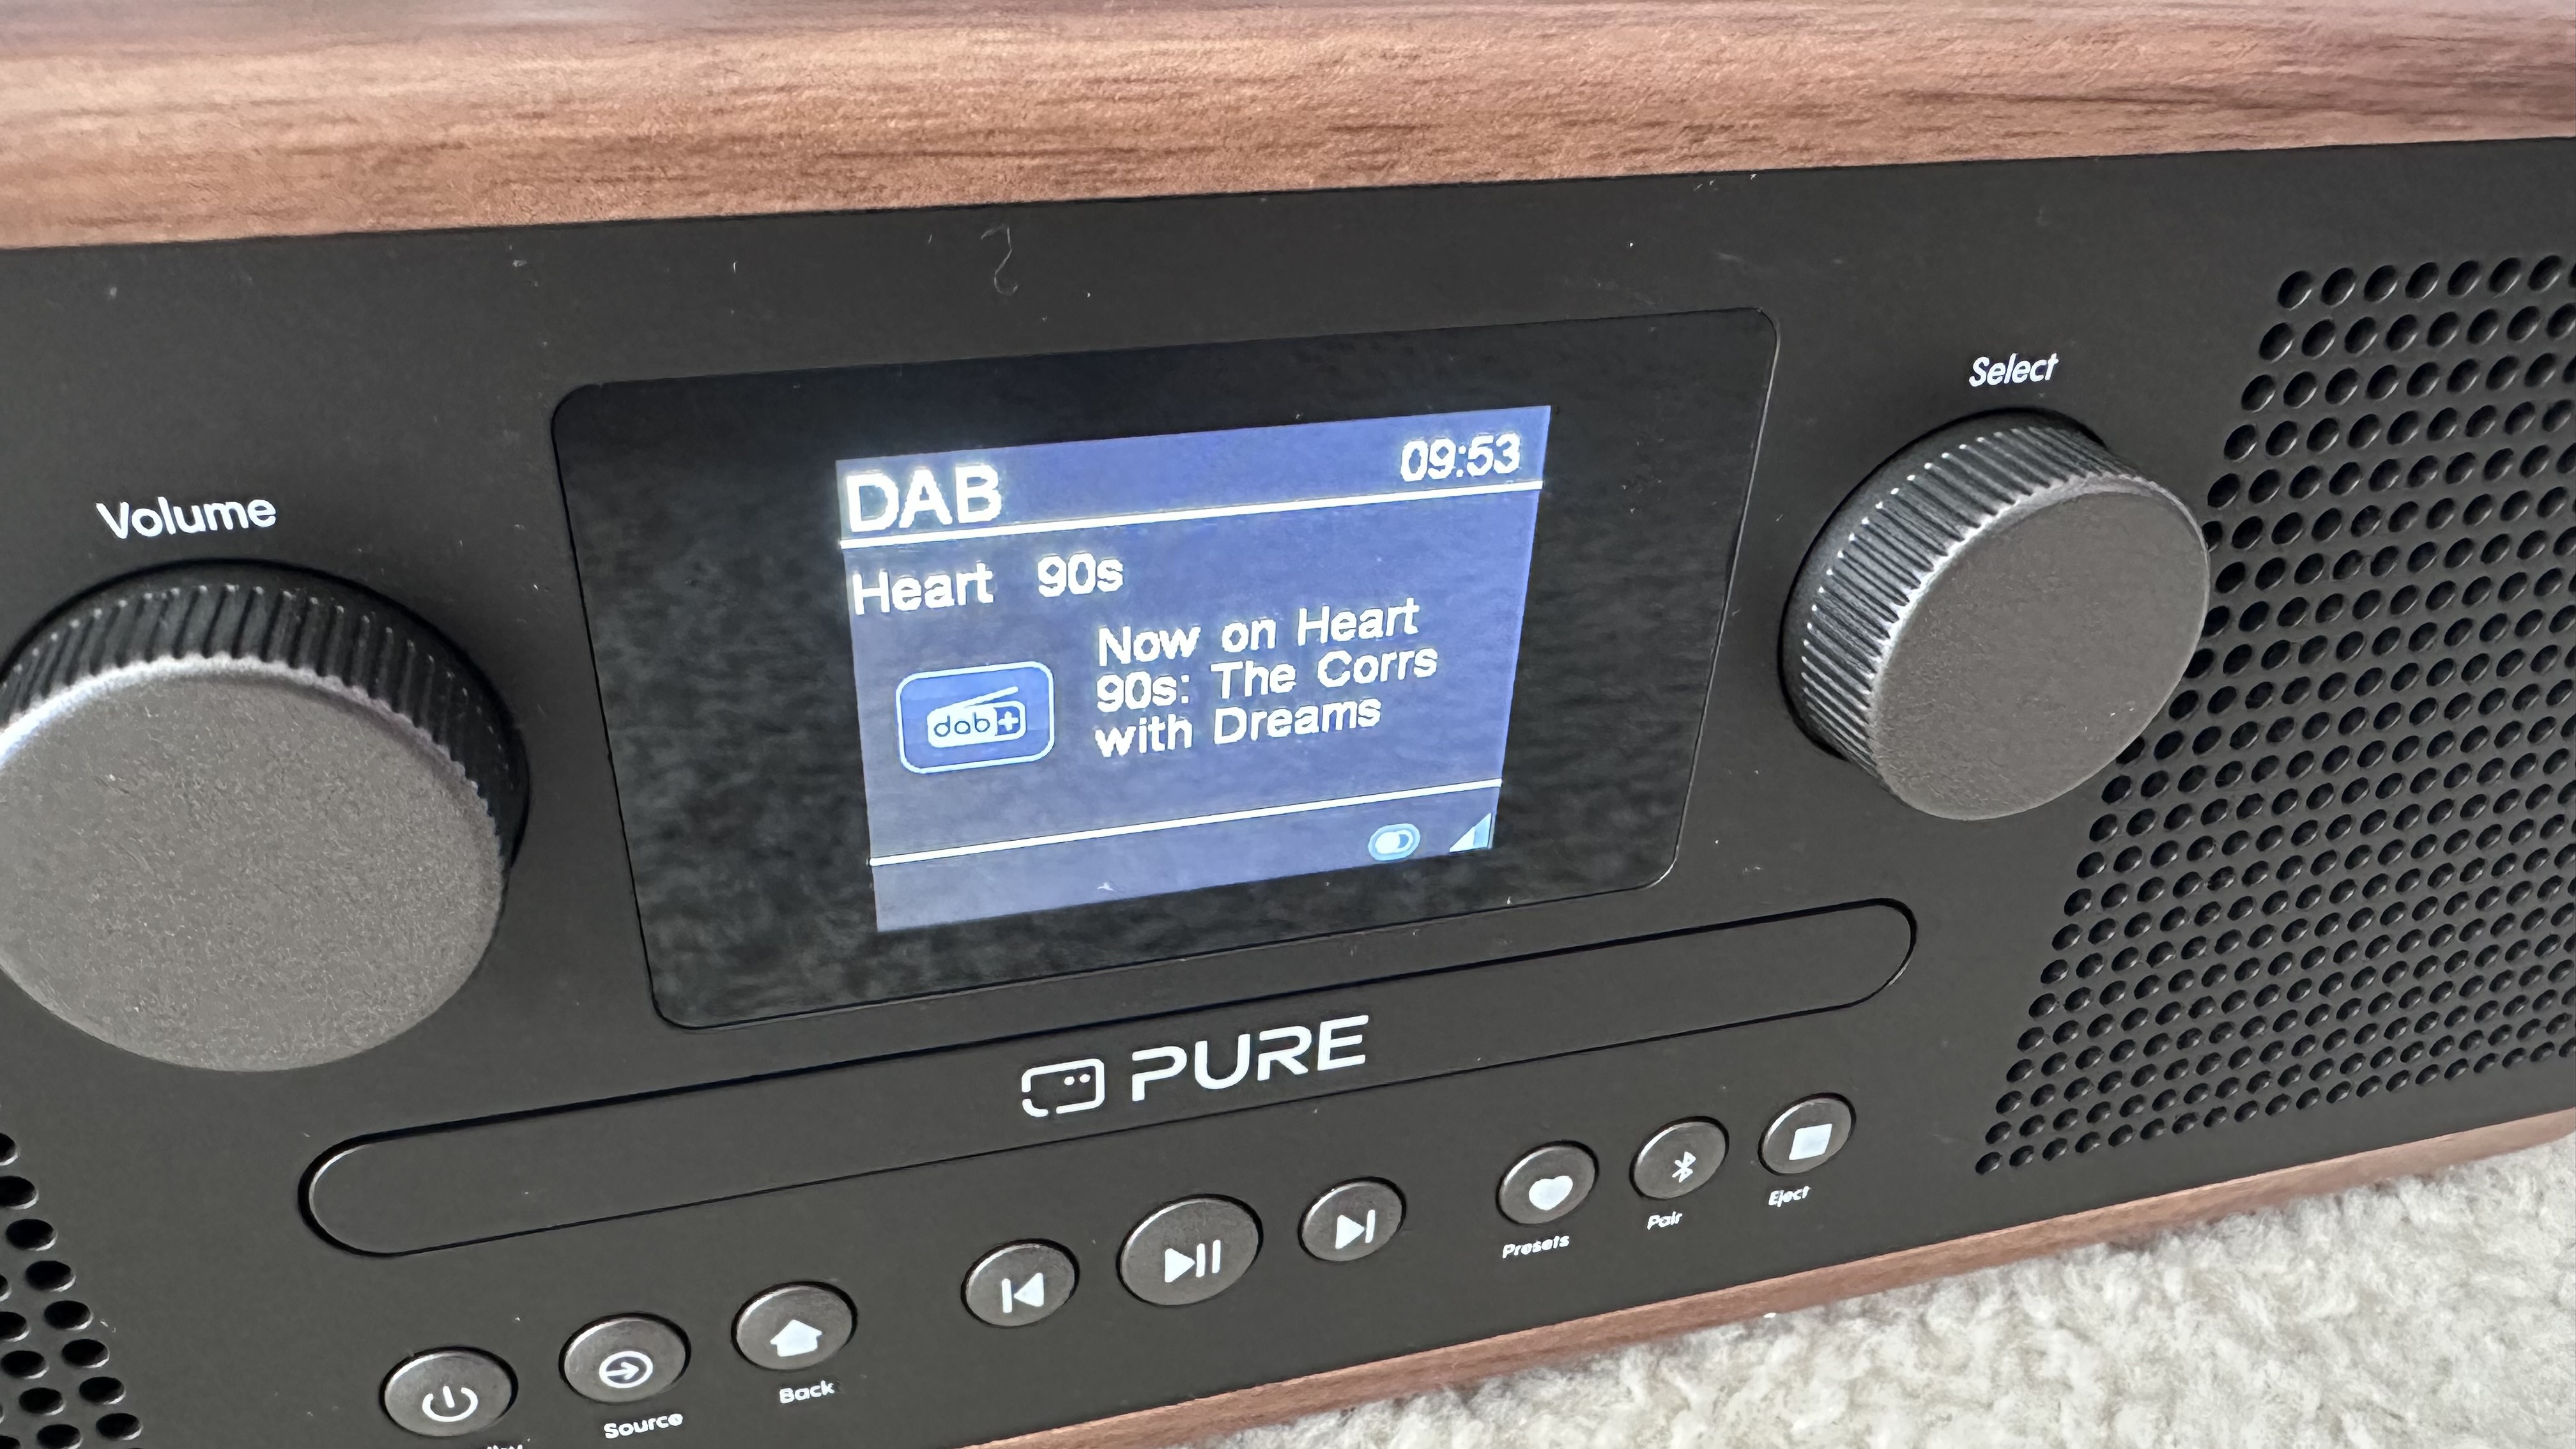 رادیو Pure Classic C-D6 DAB/FM، پخش کننده سی دی، بلندگوی بلوتوث در حال پخش رادیو Heart 90s روی فرش